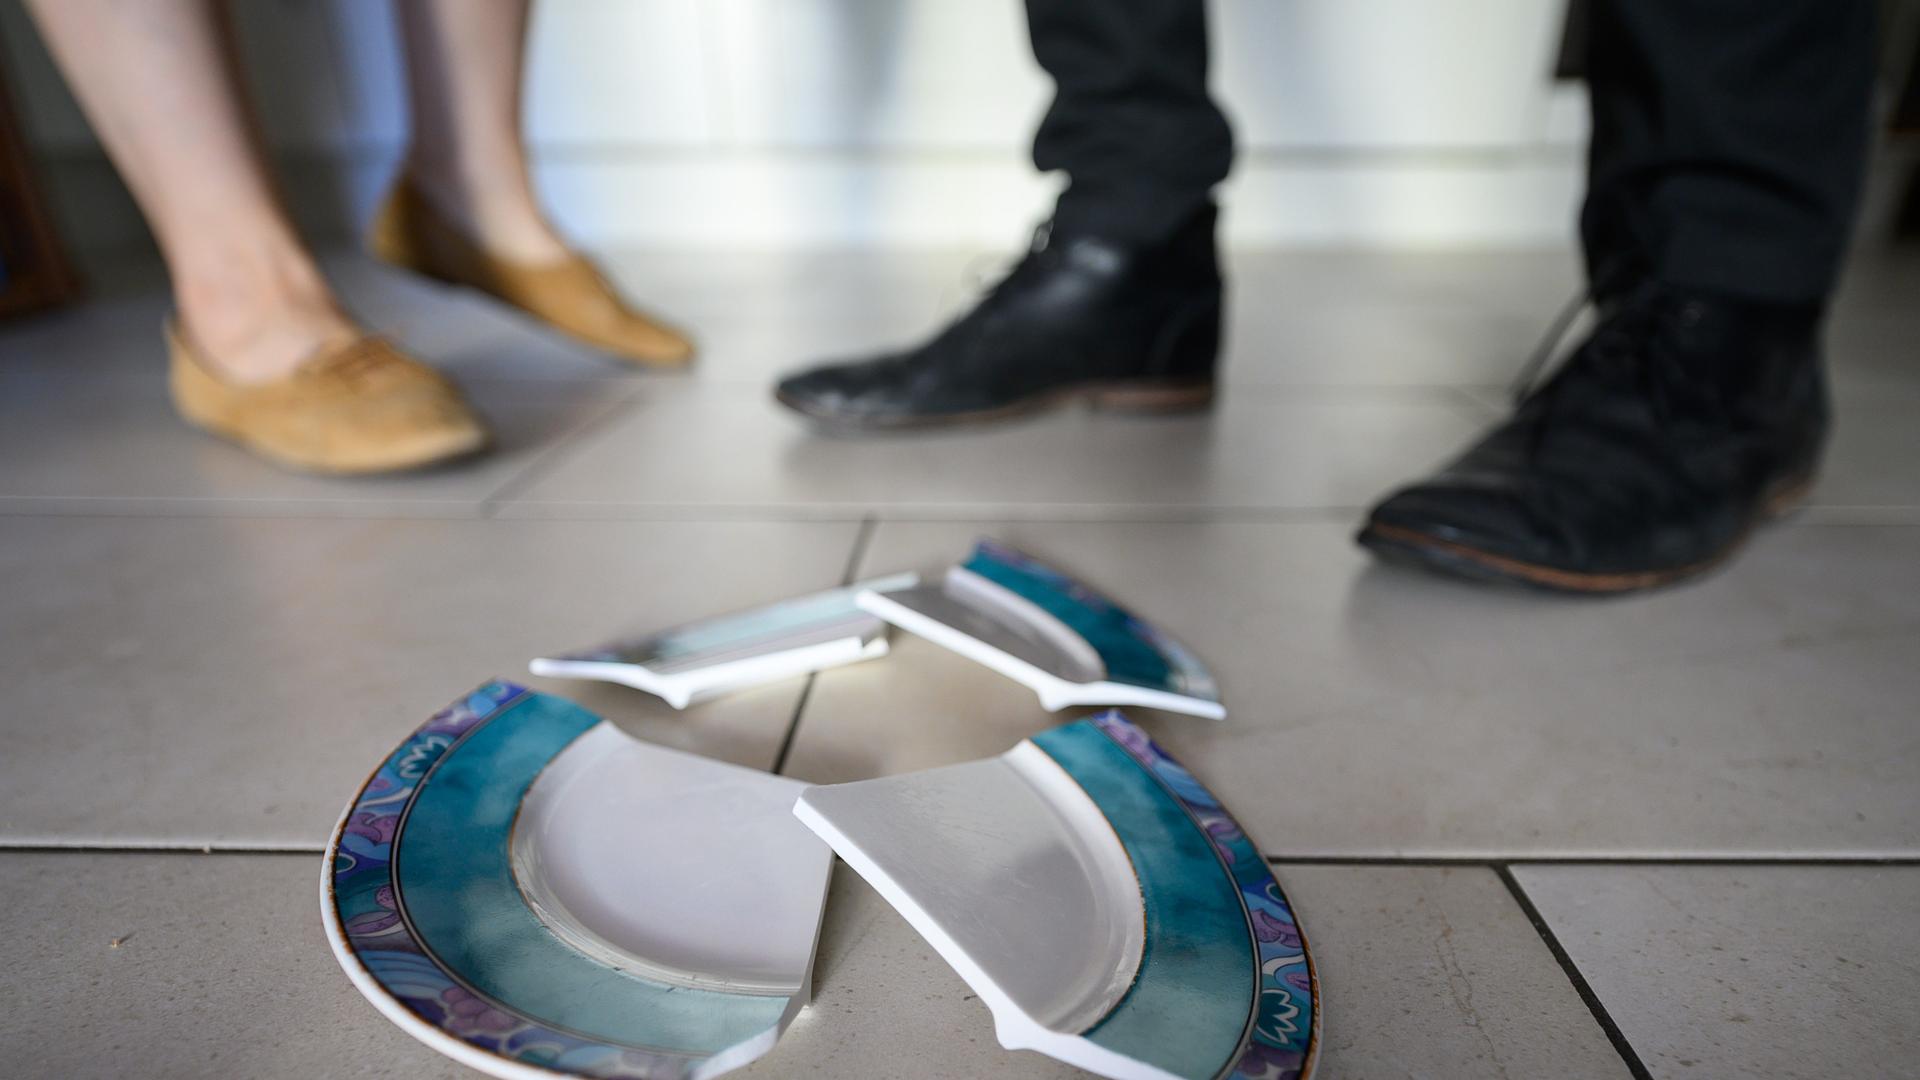 Füße eines Mannes und einer Frau hinter einem zerbrochenen Teller in einer Küche.